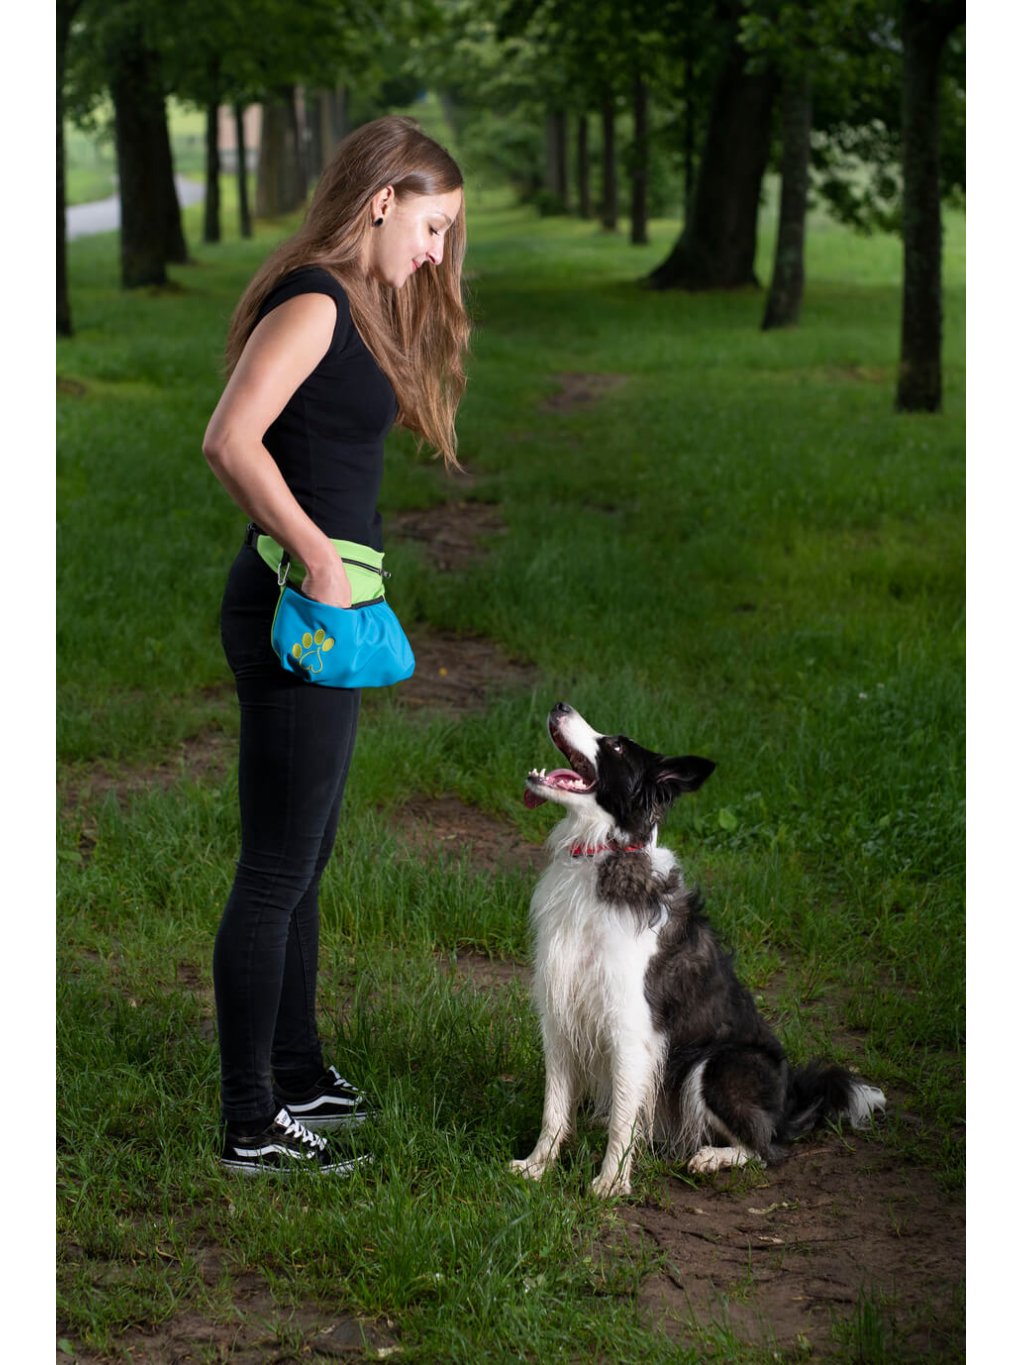 Dog training treat pouch XL Lilac